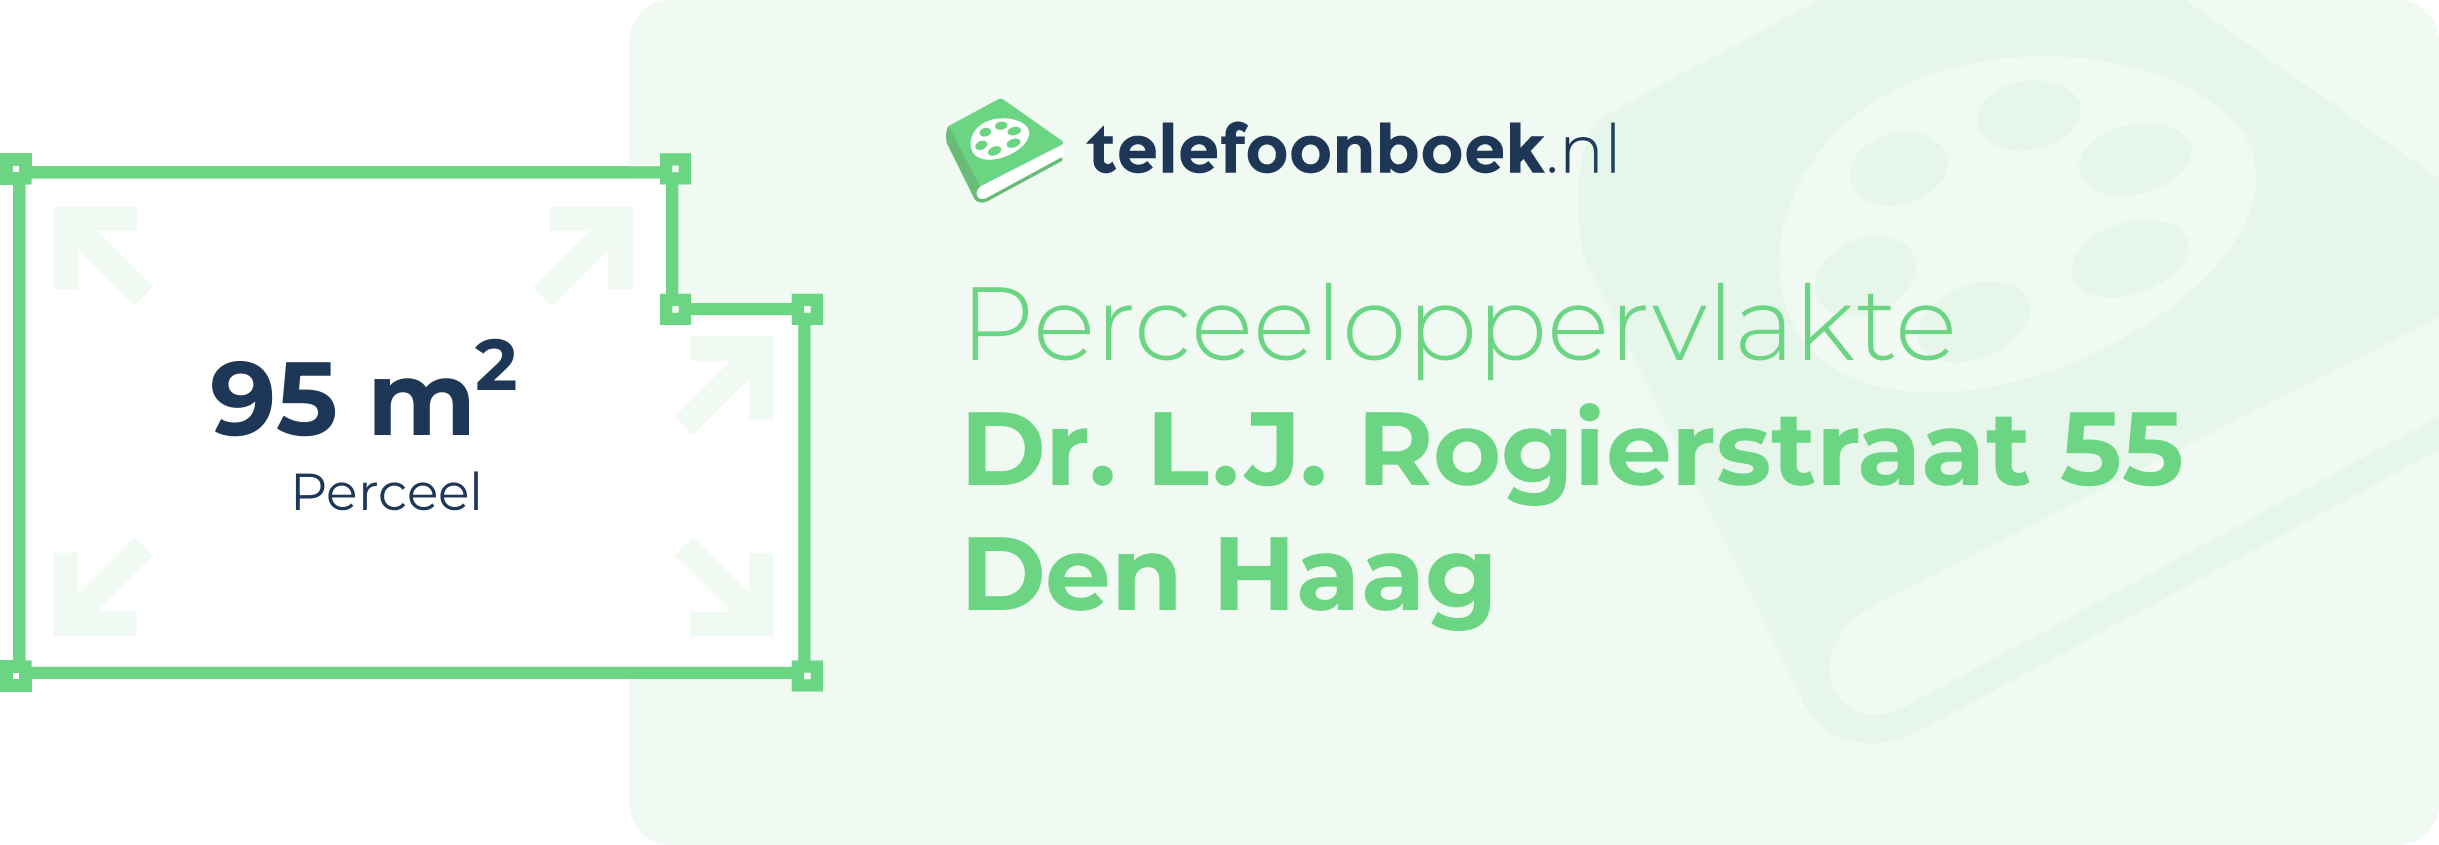 Perceeloppervlakte Dr. L.J. Rogierstraat 55 Den Haag